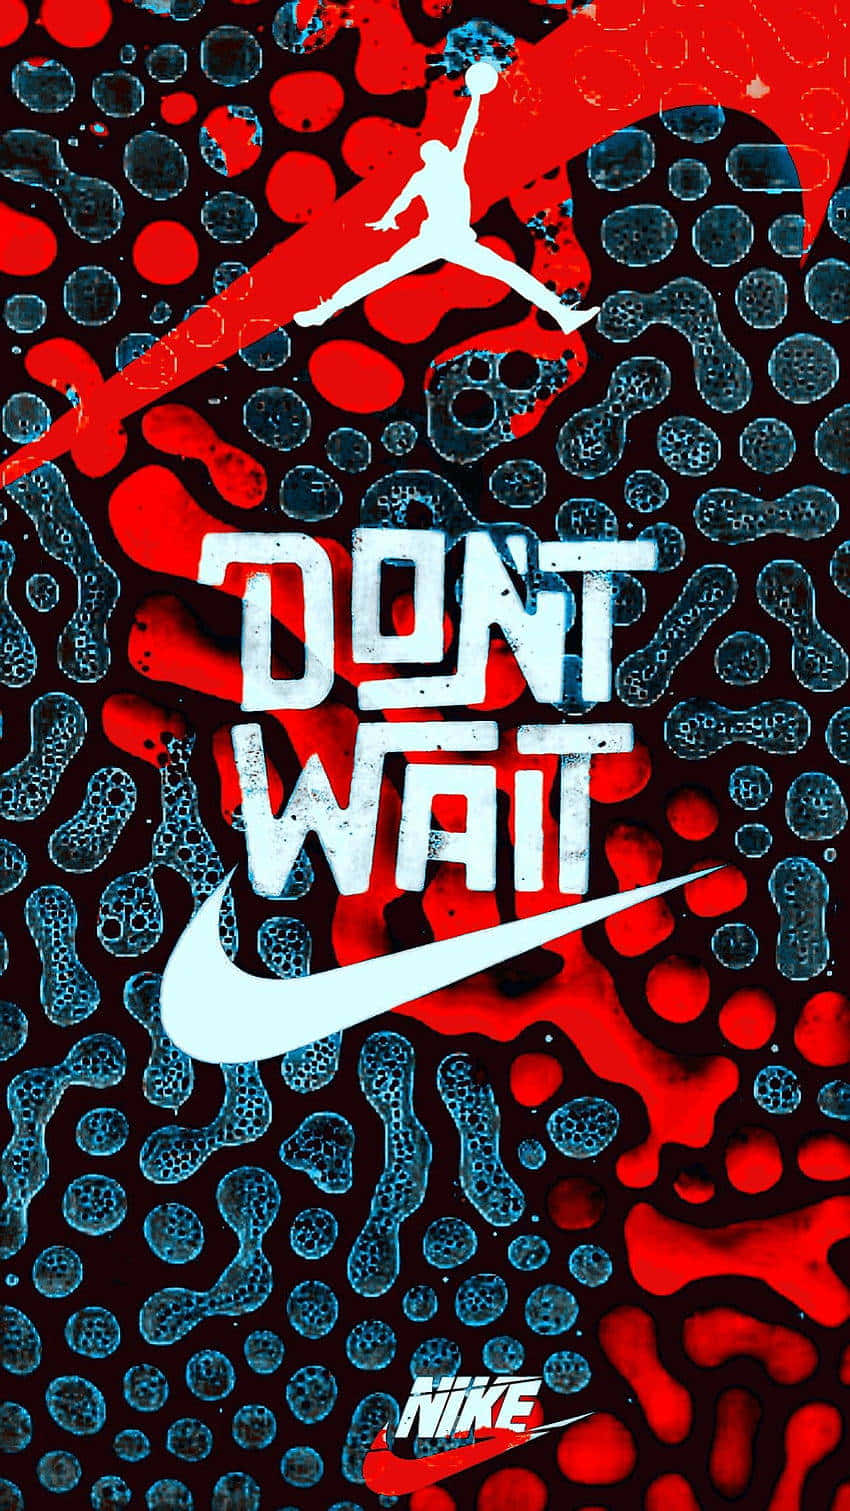 Wartenicht, Nike Jordan Wallpaper